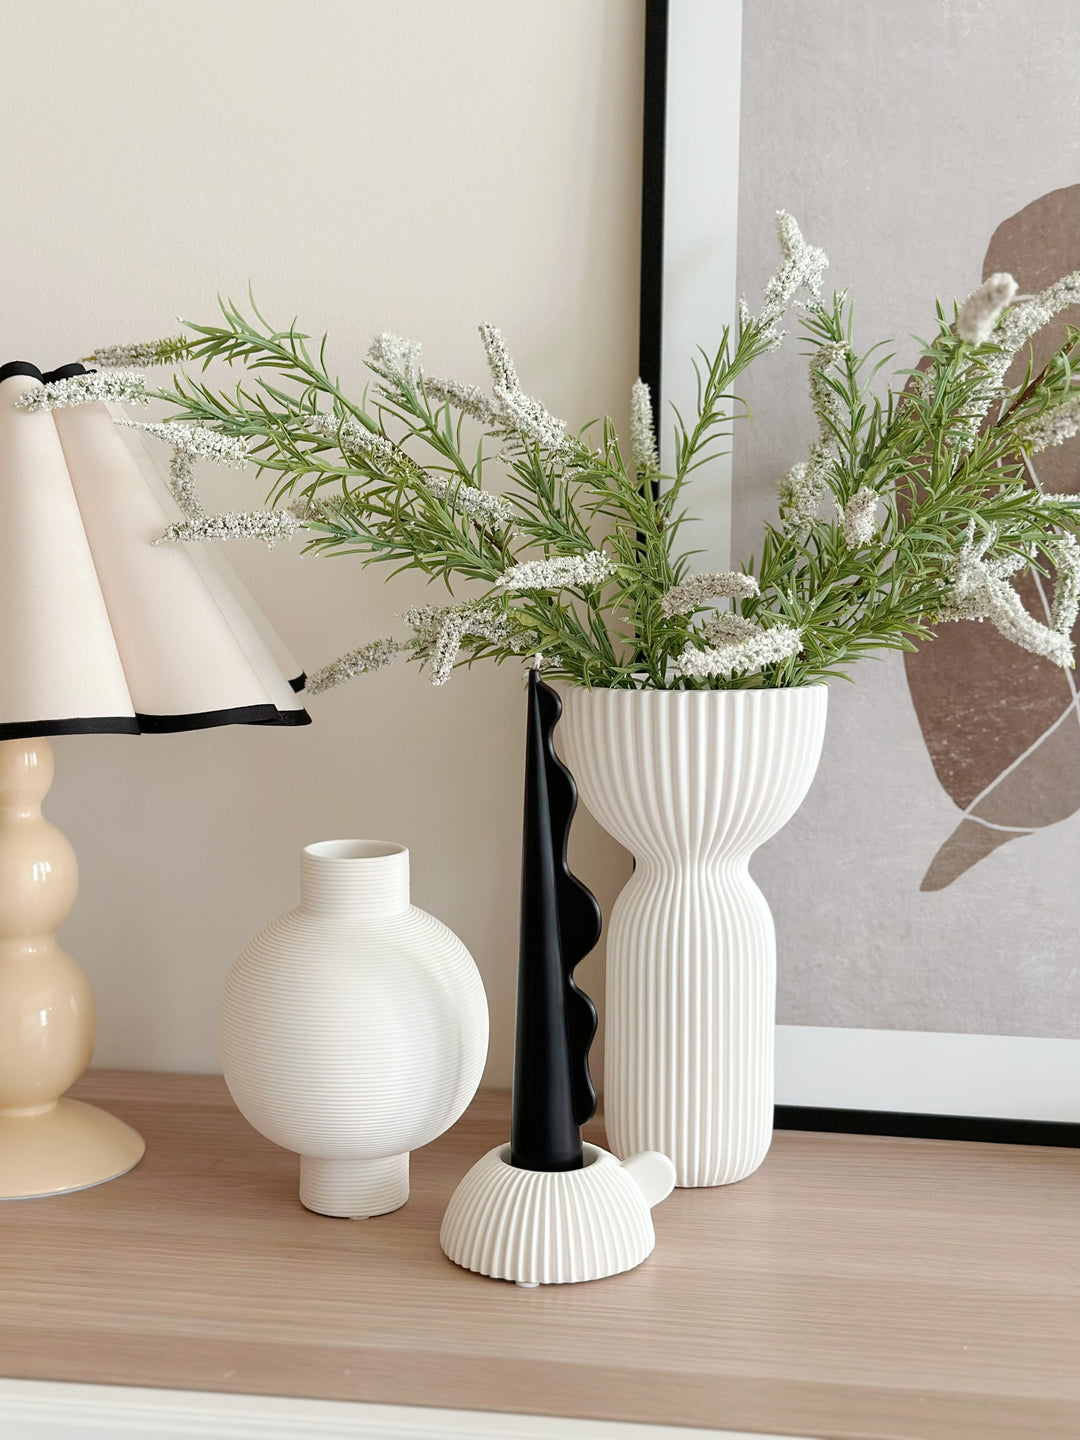 CeramiChalice Elegance: Fluted Porcelain Vase